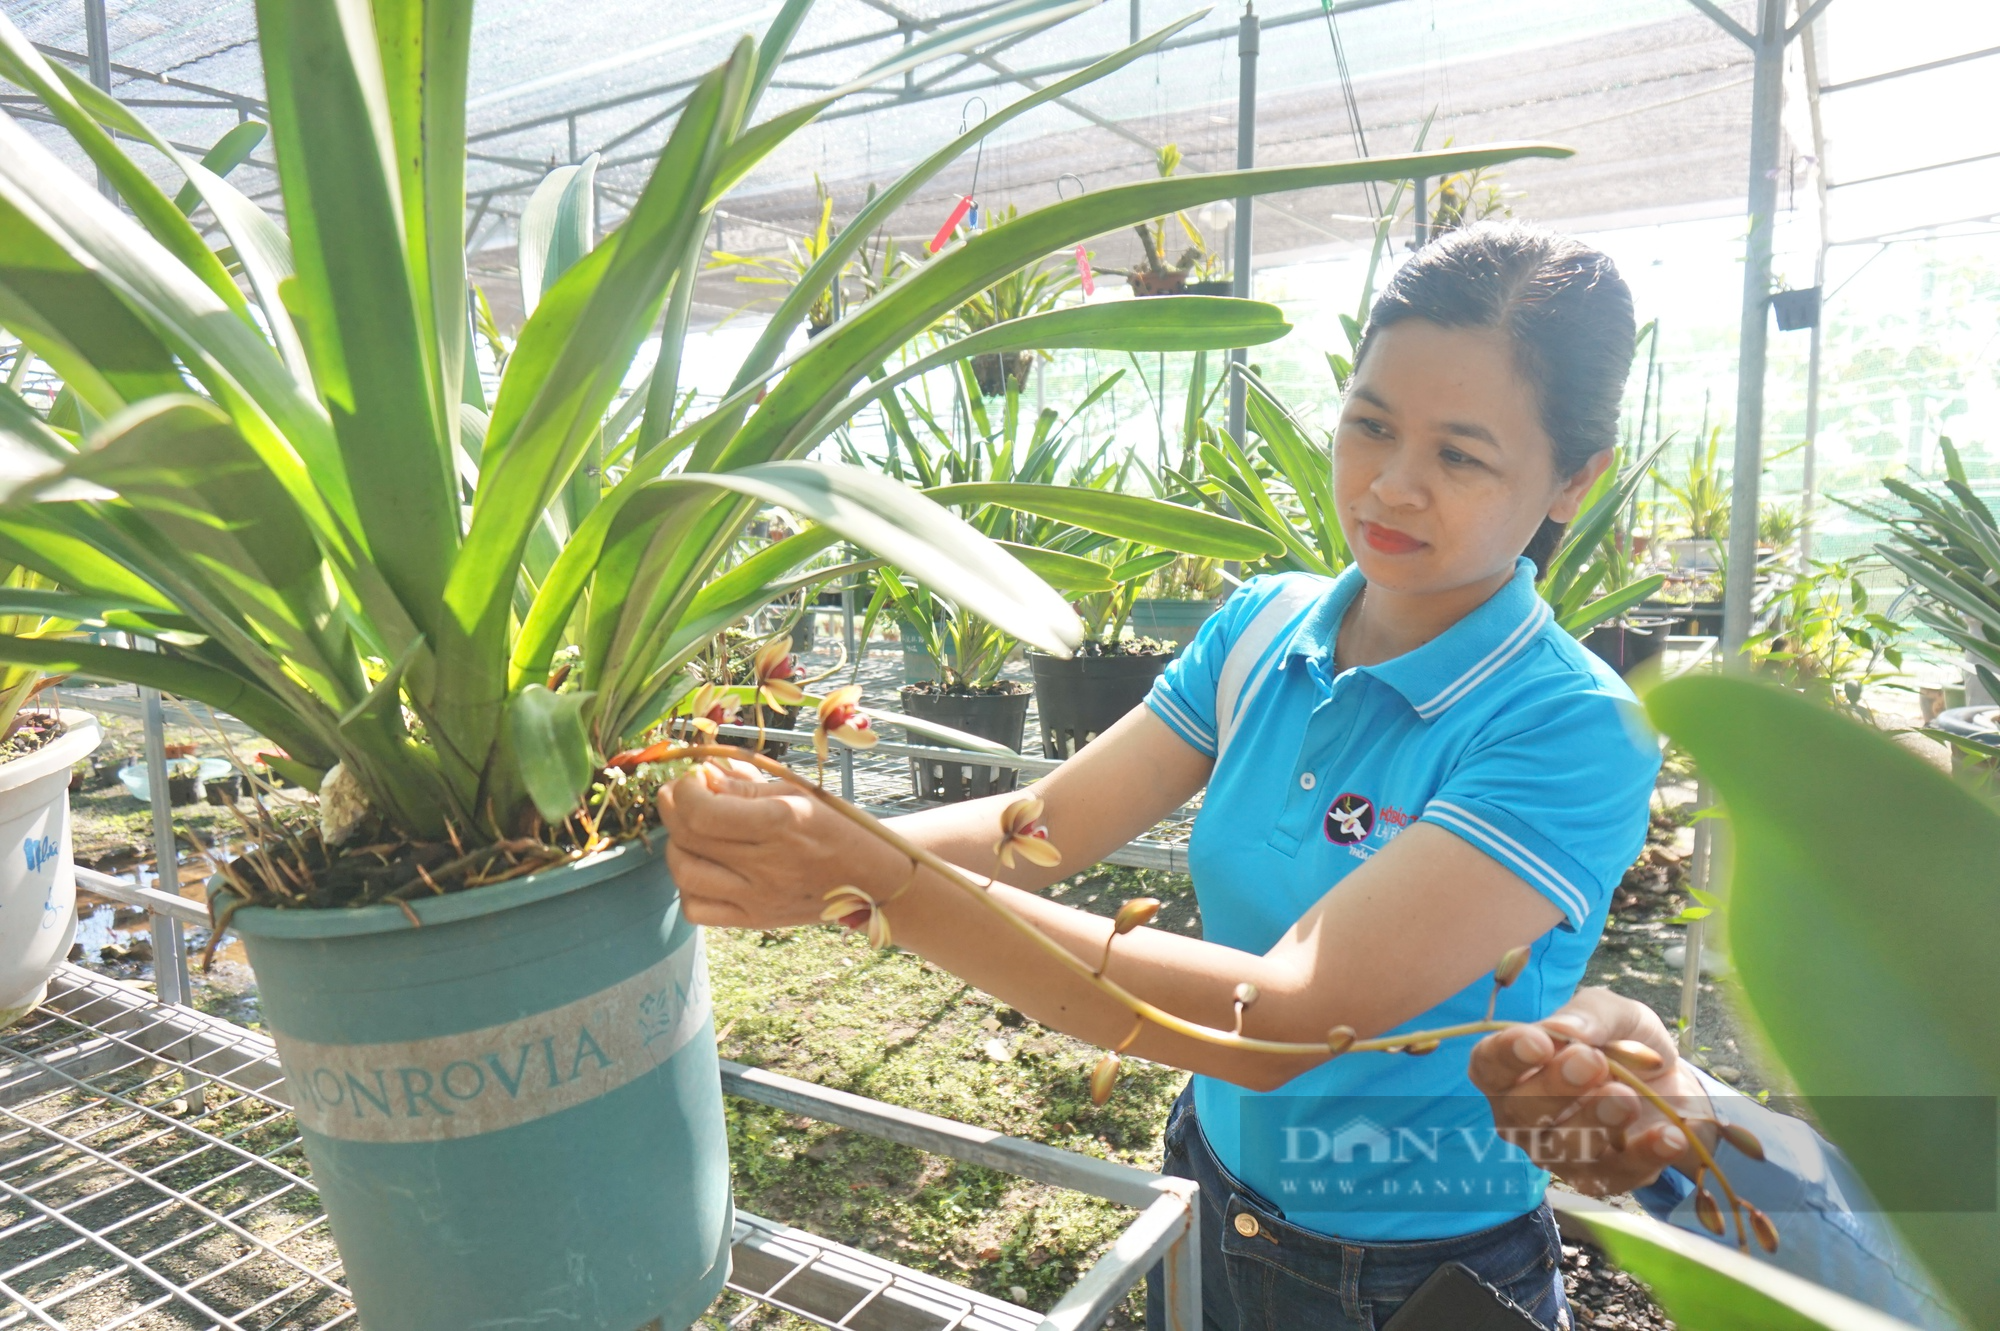 Quỹ Hỗ trợ nông dân - điểm tựa giúp nông dân Đà Nẵng thoát nghèo - Ảnh 3.